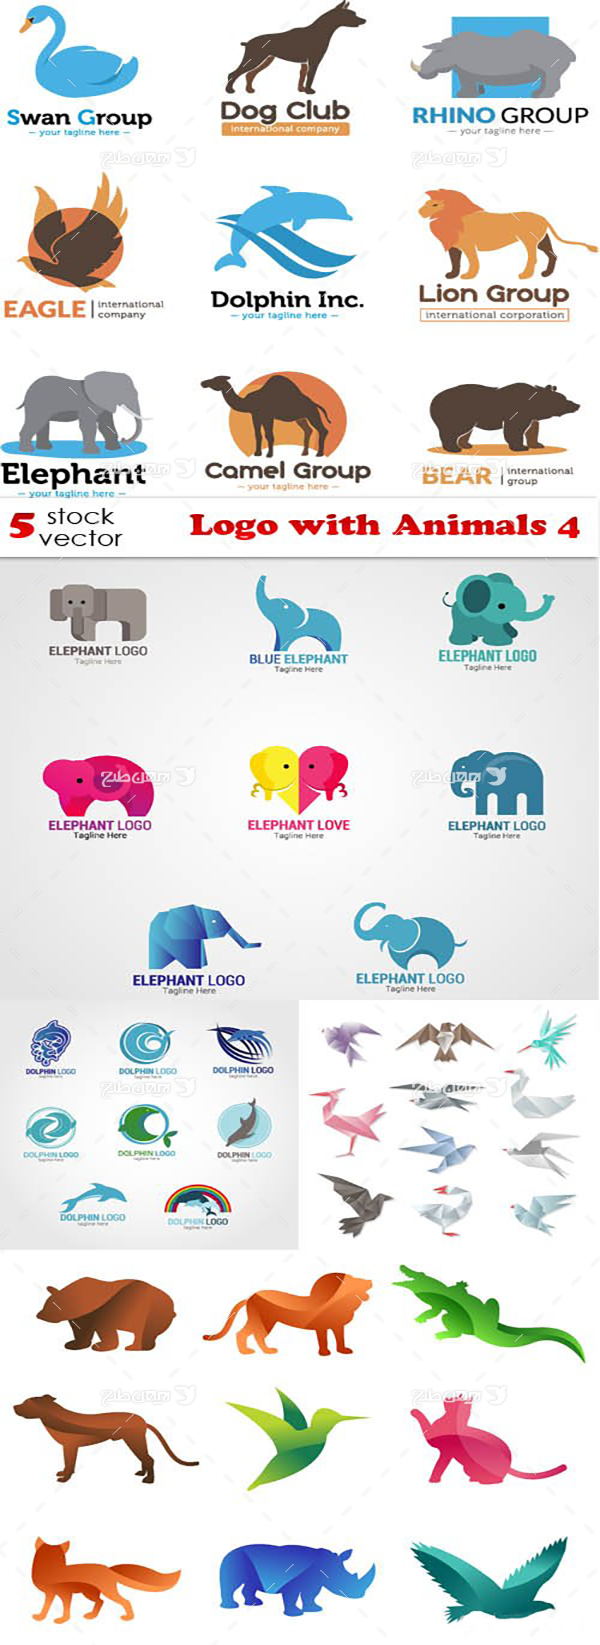 لوگو با موضوع حیوانات